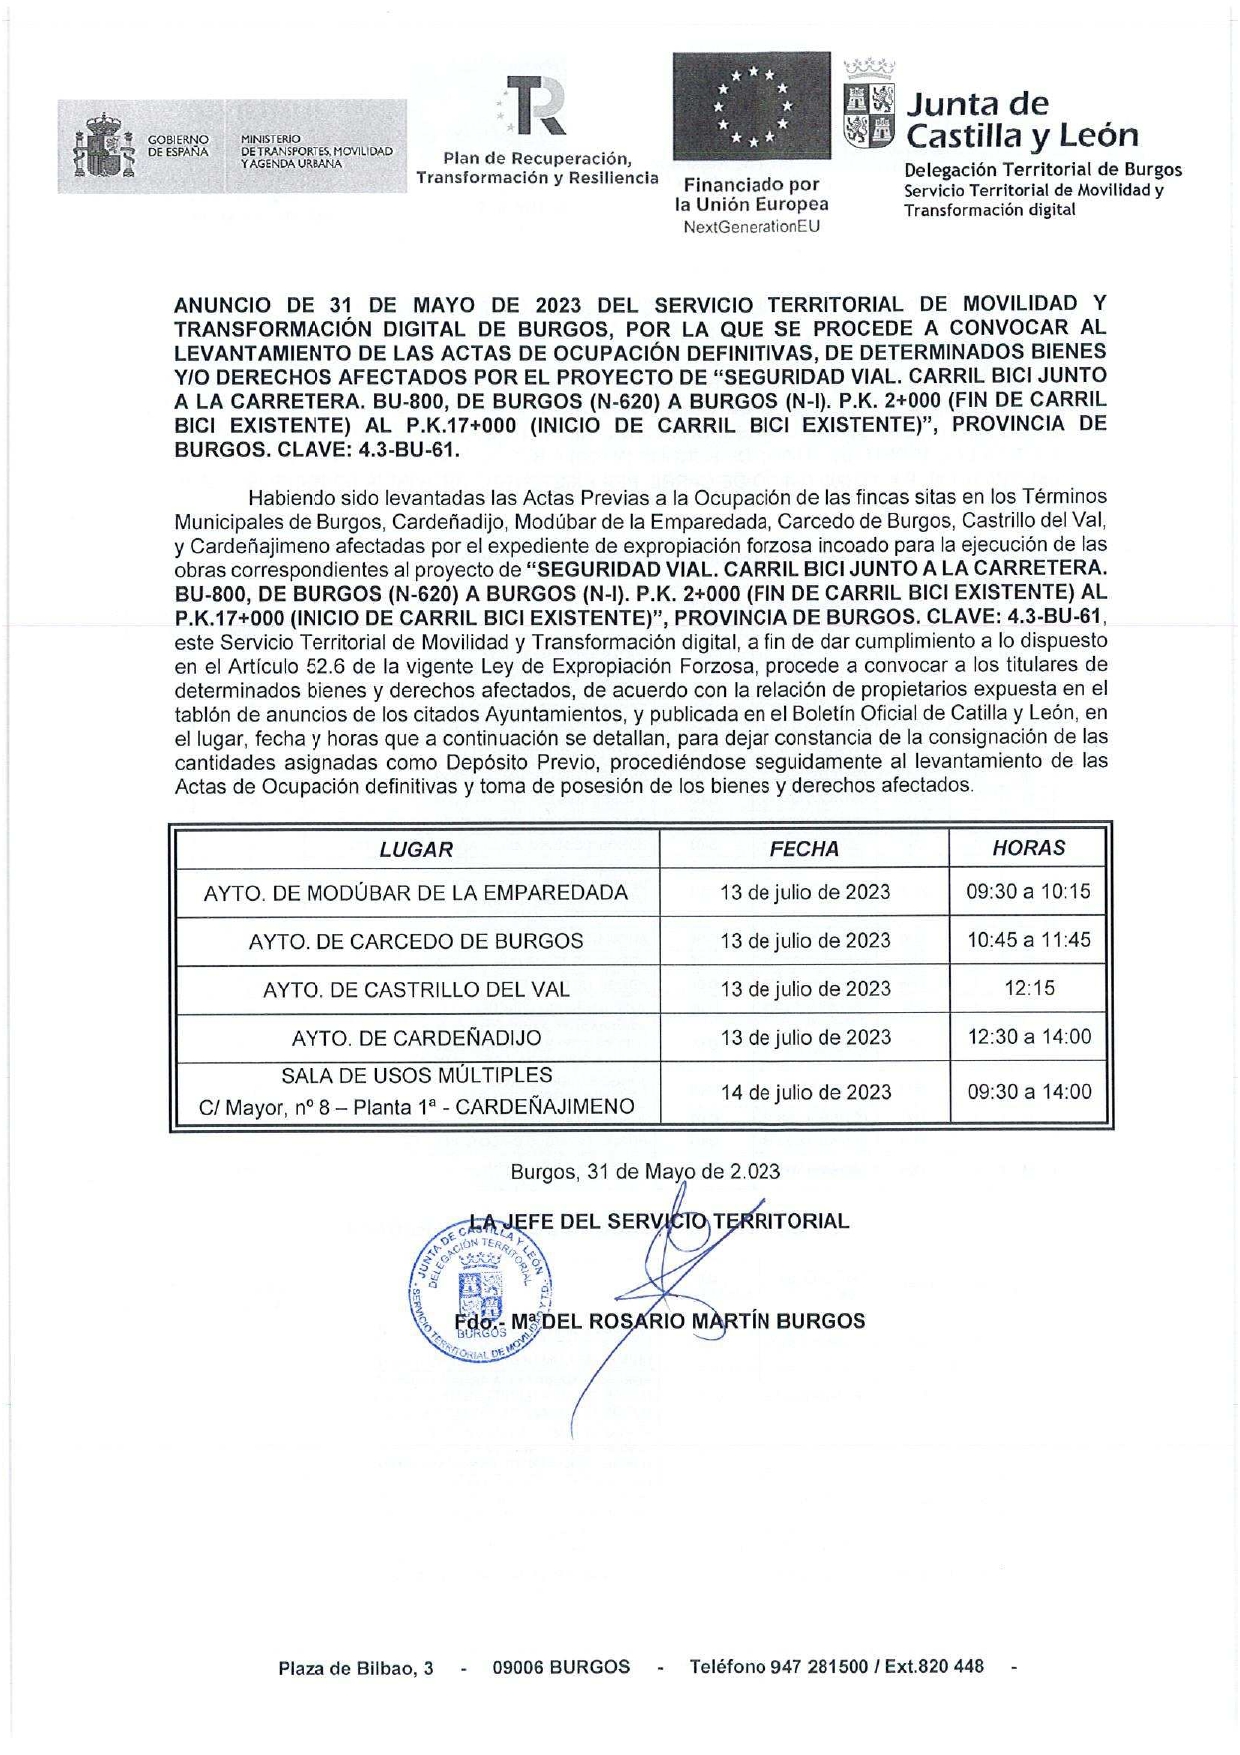 ANUNCIO LEVANTAMIENTO ACTAS OCUPACION DEFINITIVA CARRIL BICI EL 13-07-2023